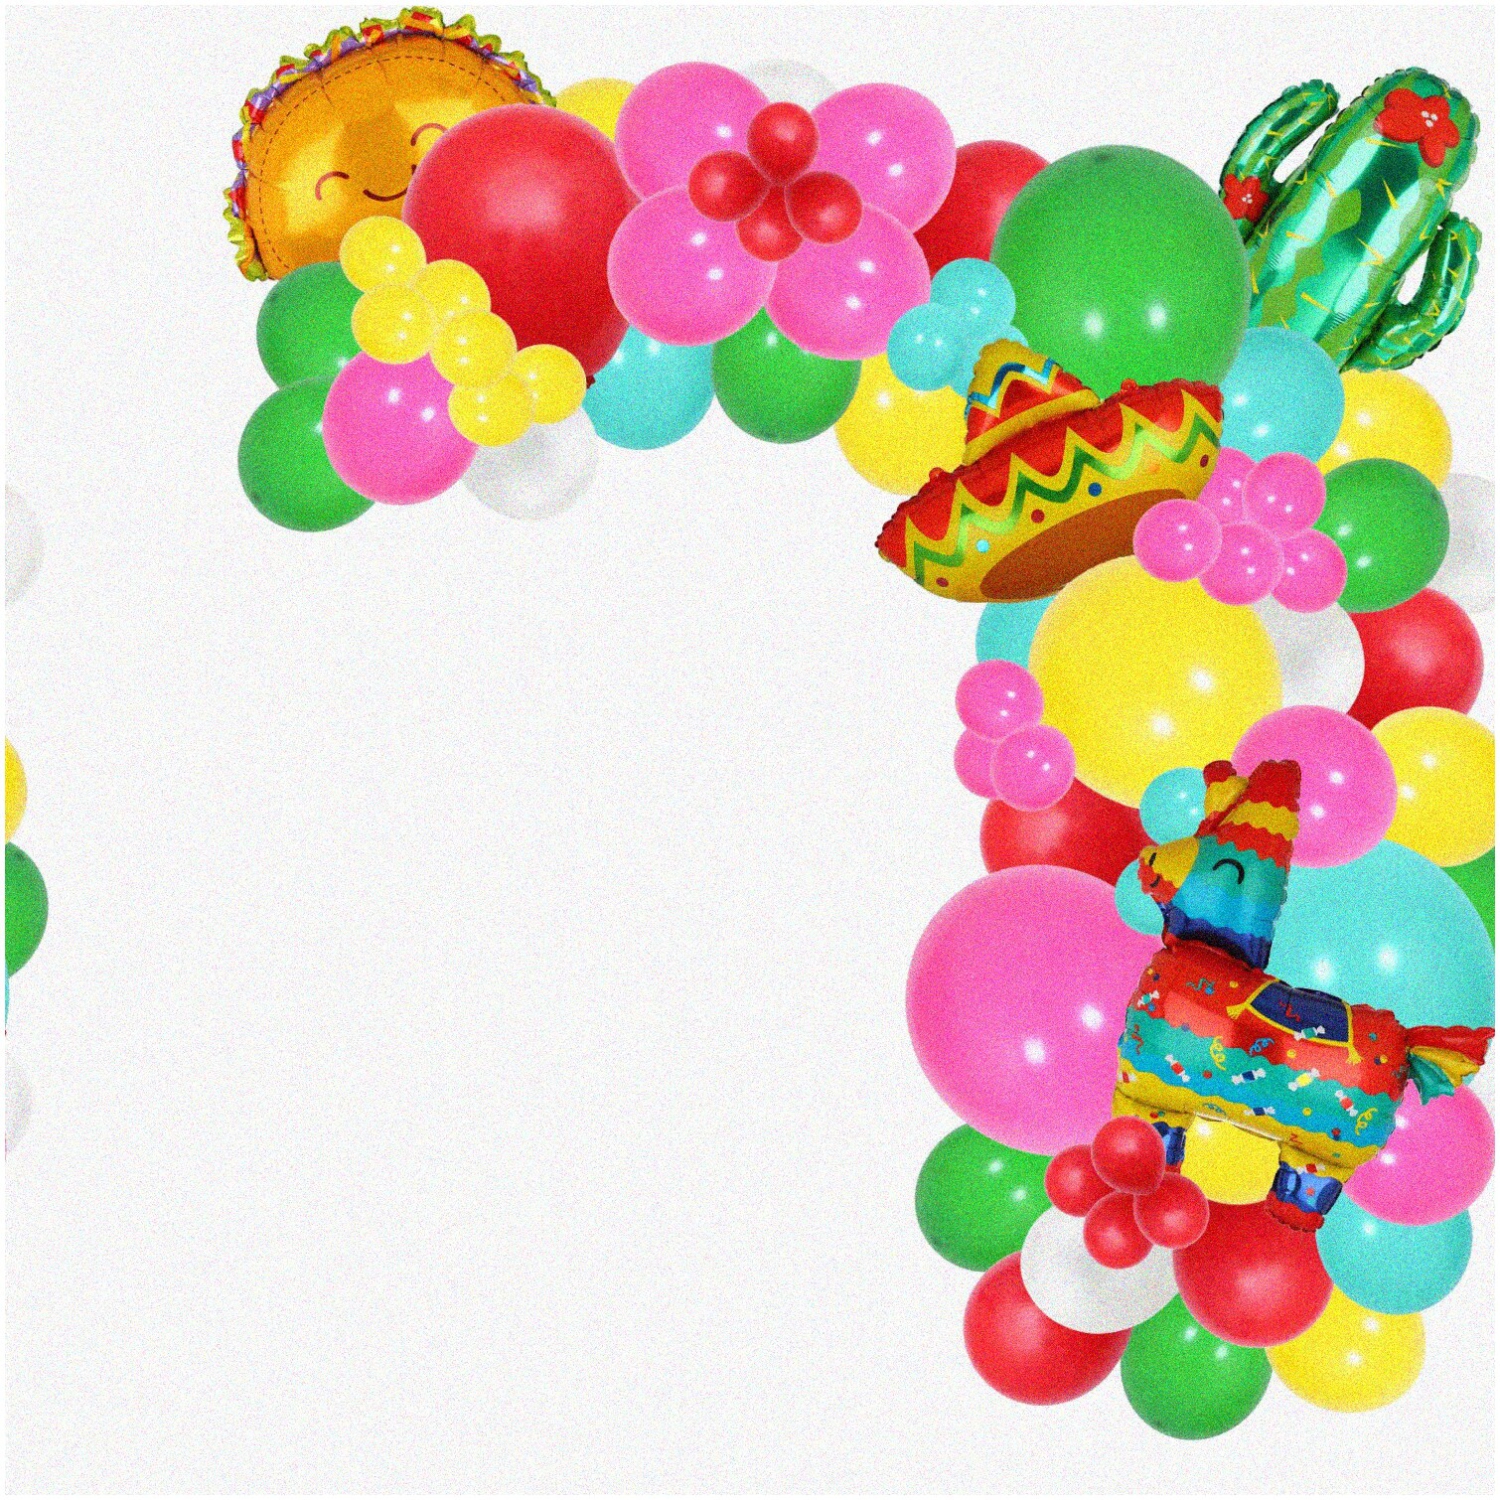 Fiesta Fun Extravaganza: 154-Piece Balloon Arch Garland Kit with Cactus, Llama, Sombrero, and Taco Party Decorations - Cinco De Mayo Celebration